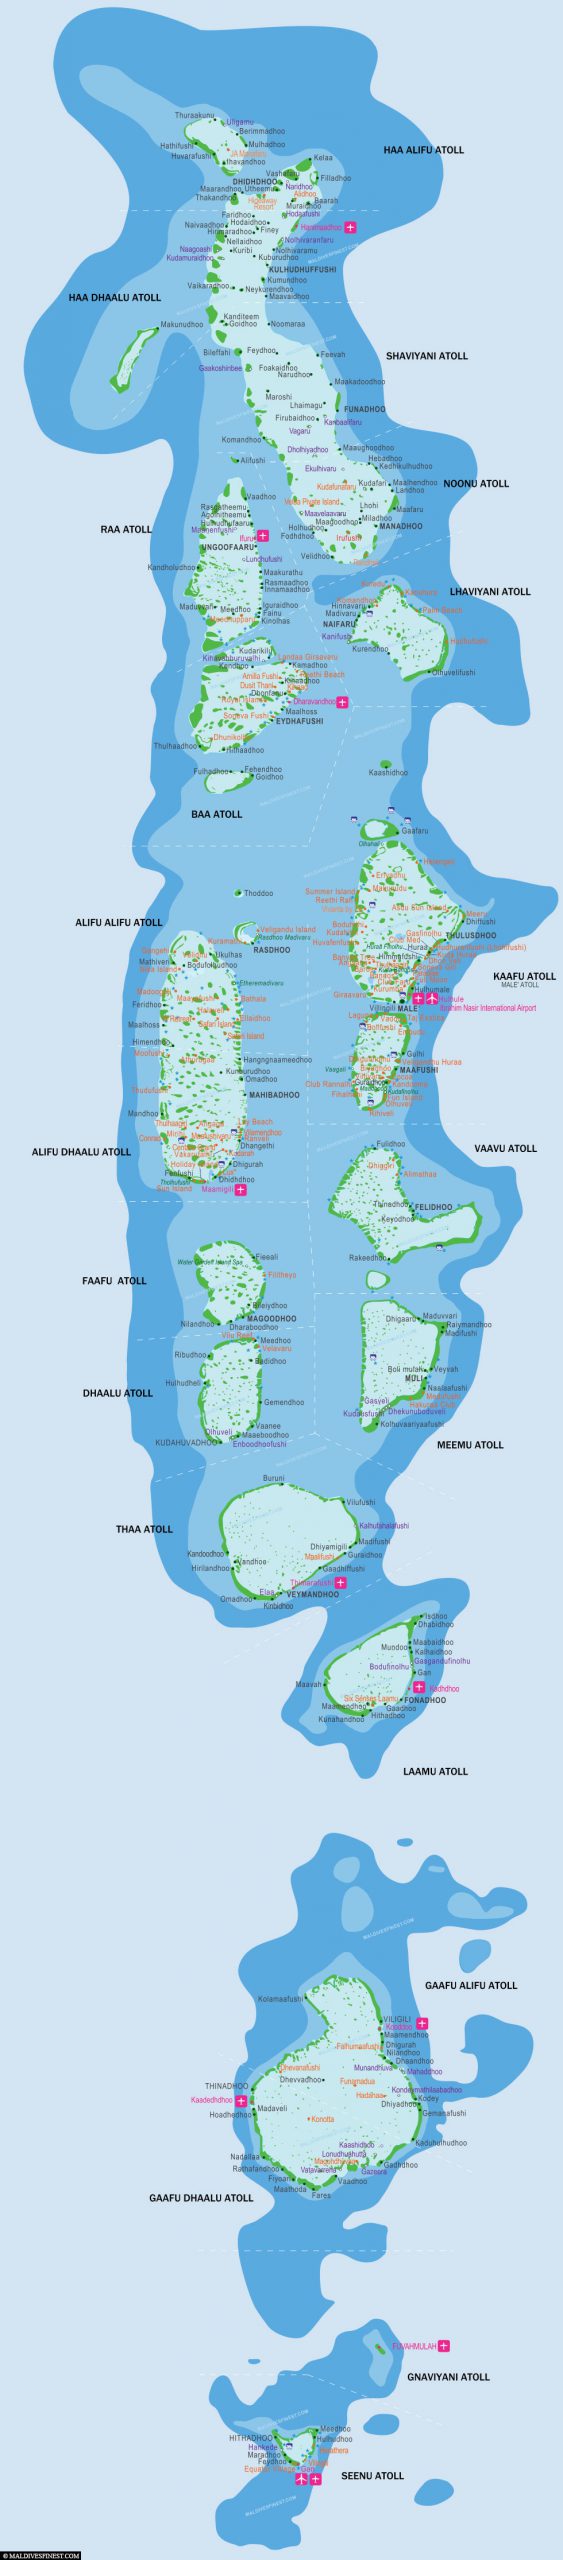 Maldives, Map, Atolls